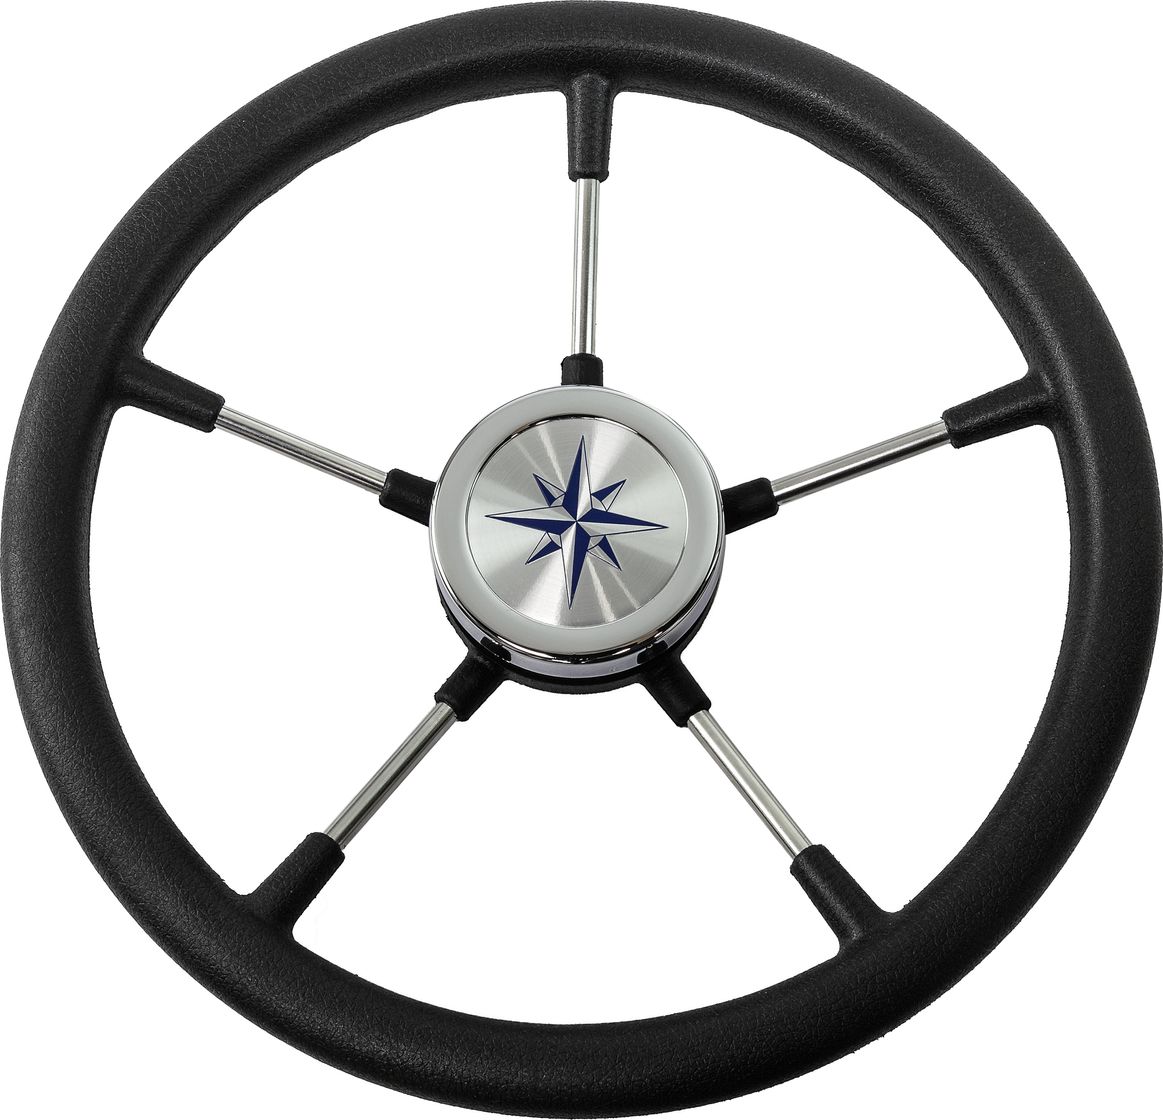 Рулевое колесо RIVA RSL обод черный, спицы серебряные д. 360 мм VN735022-01 рулевое колесо matrix черный обод more 10016473